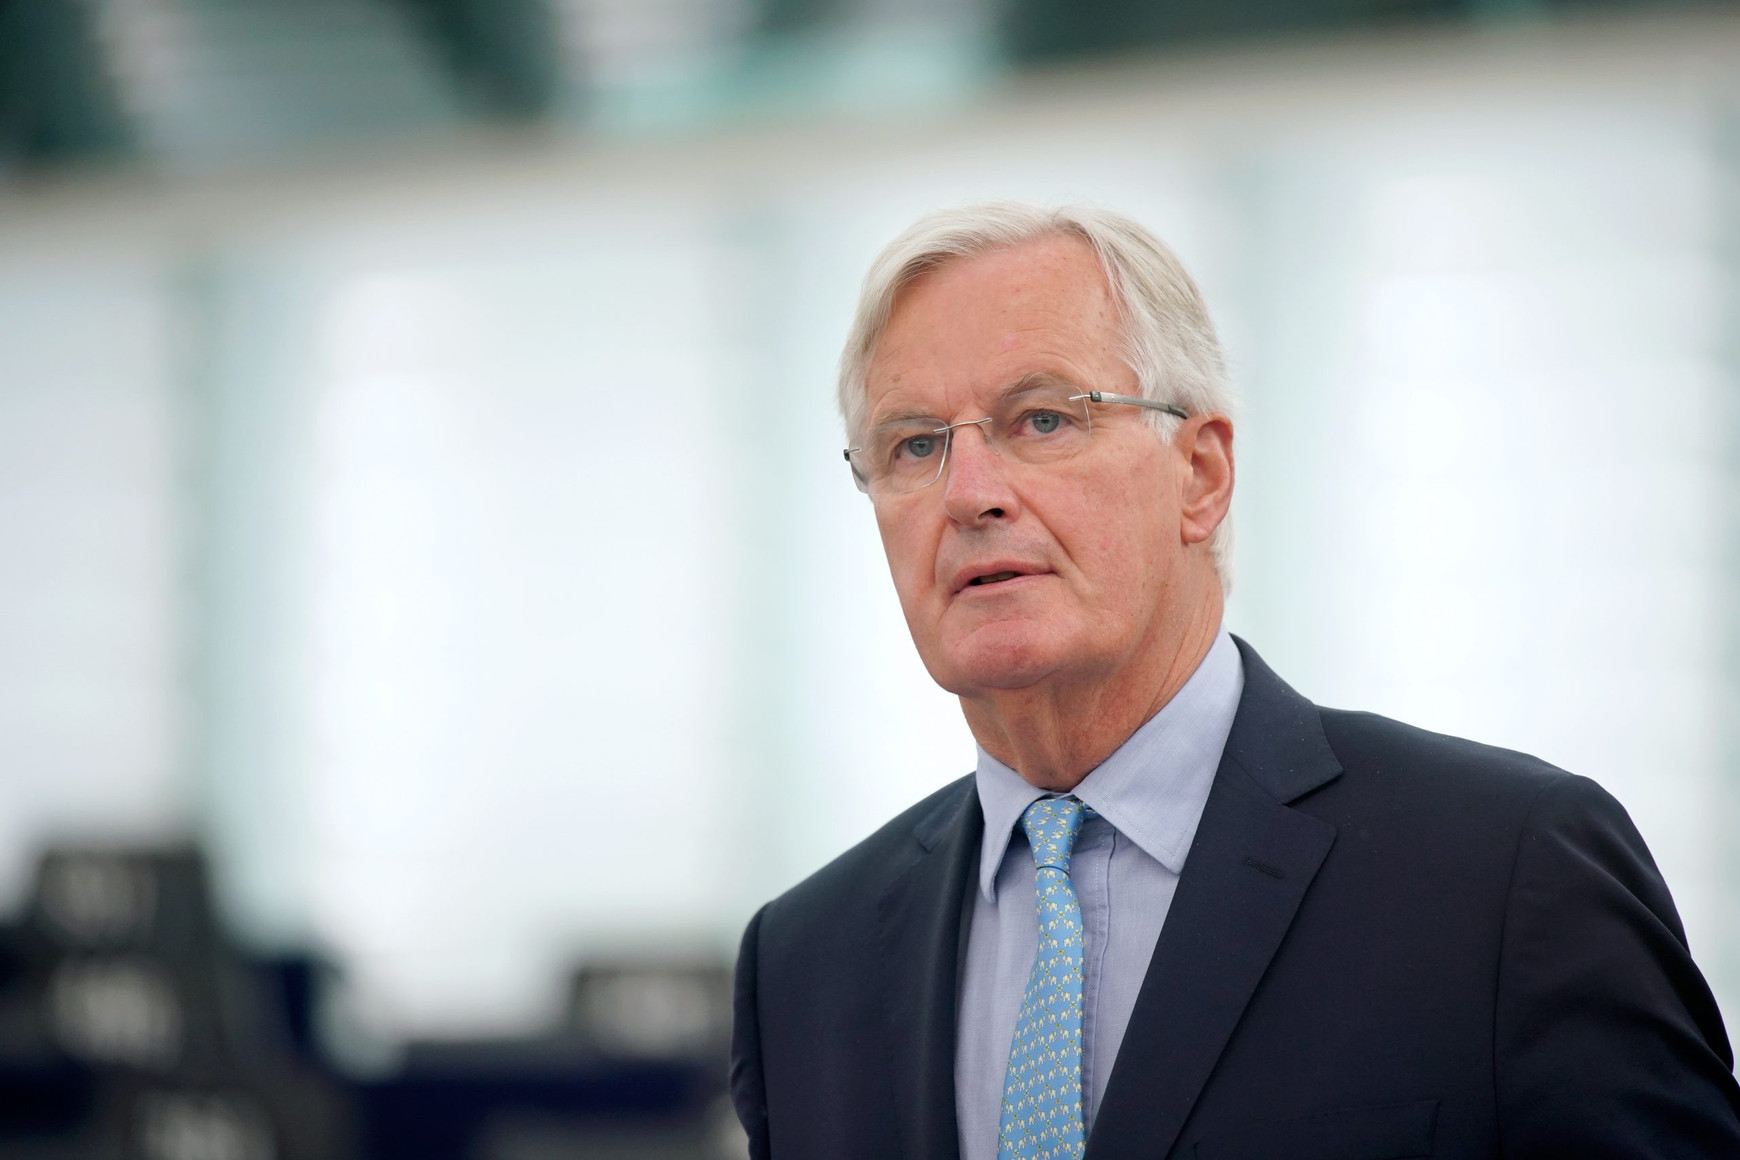 Michel Barnier appelle à “retrouver notre souveraineté juridique” en matière migratoire et à s'extraire des cours européennes - Les Surligneurs